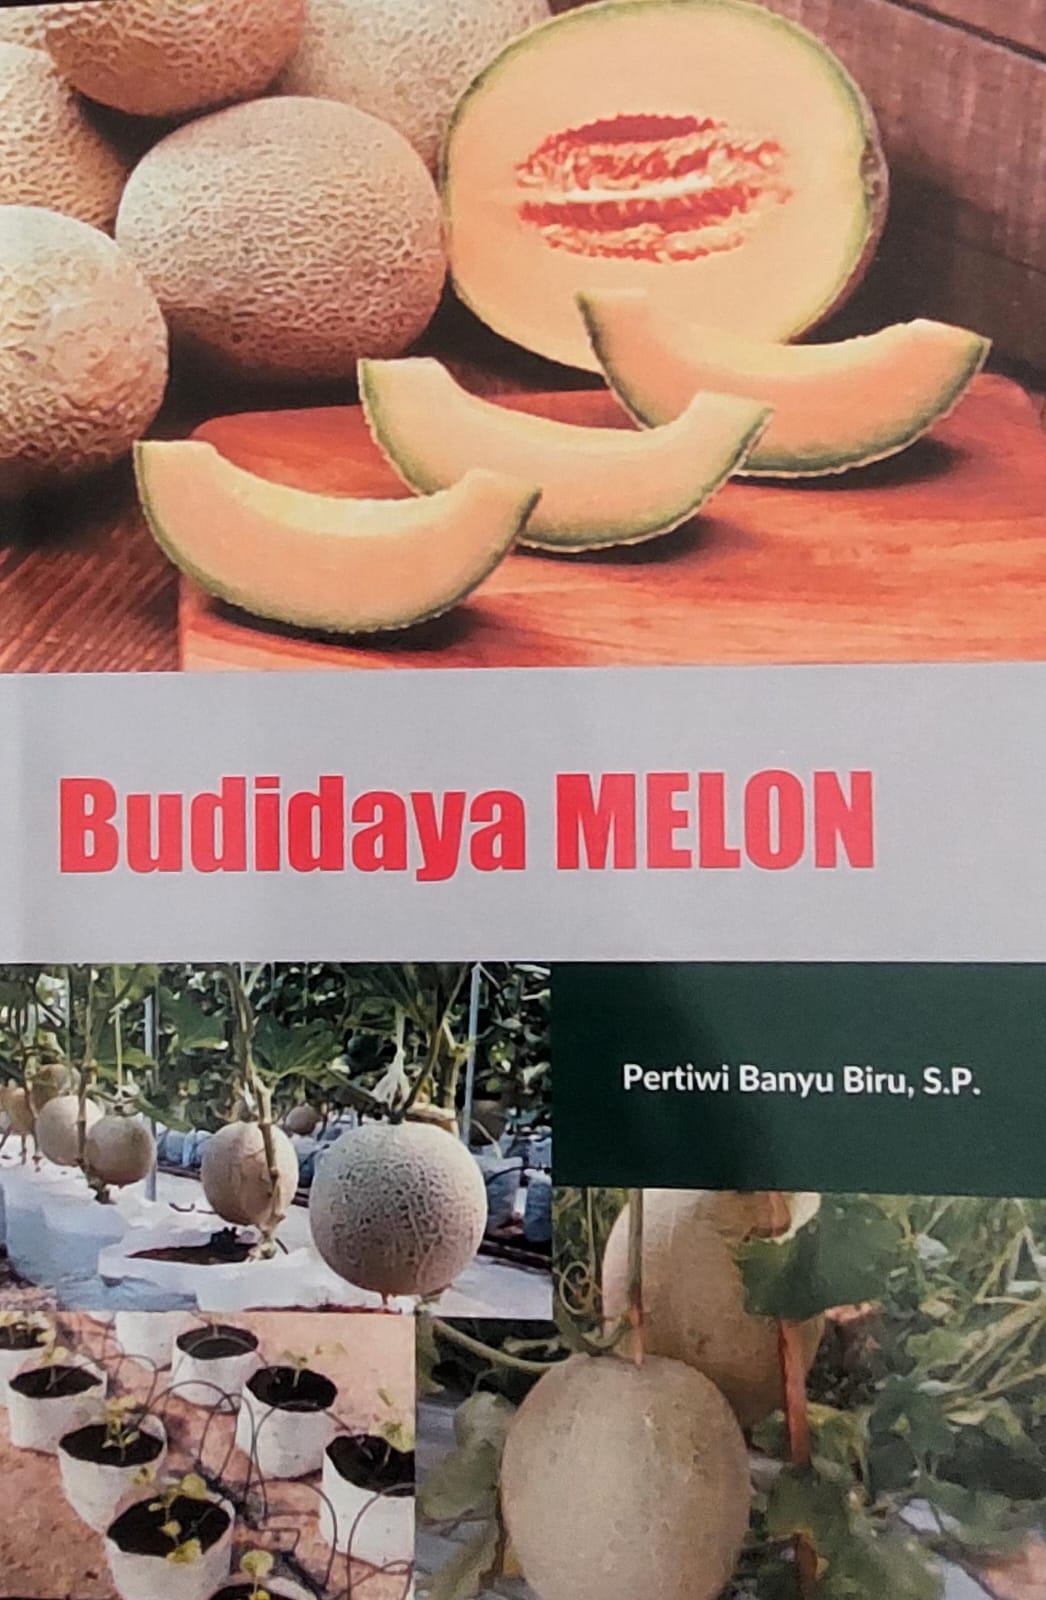 Budidaya melon